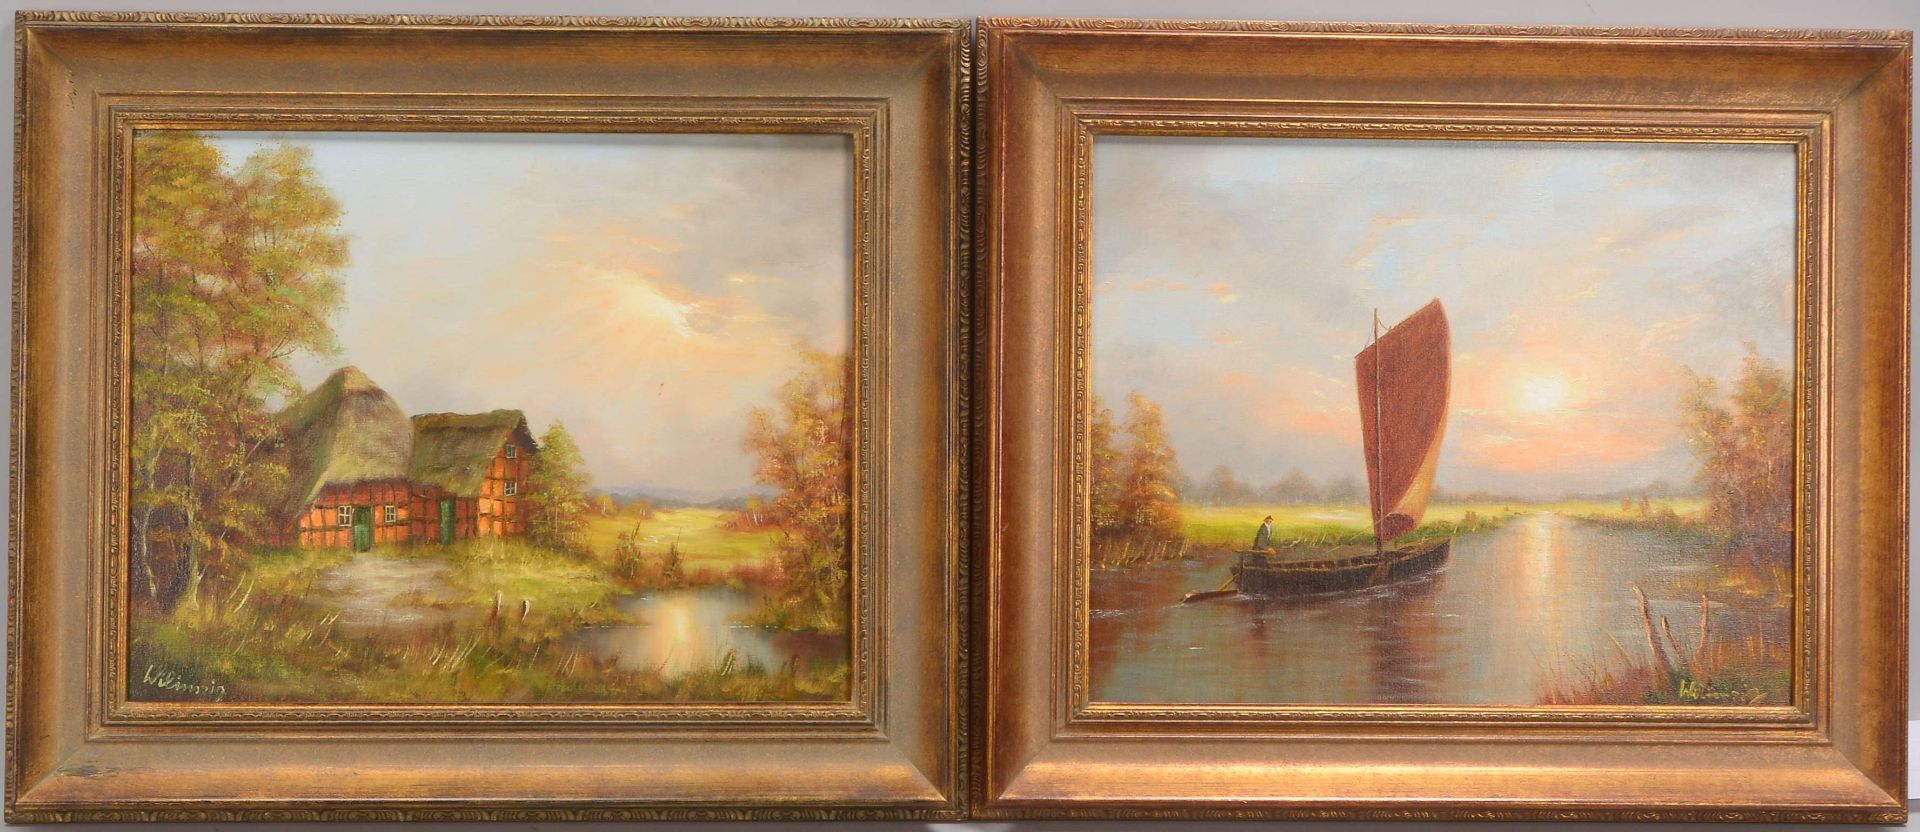 Wilimzig, Ewald (*1926 Johannisburg/Ostpreußen, Worpsweder Maler), 2 Gemälde: 'Torfkahn' und 'Bauern